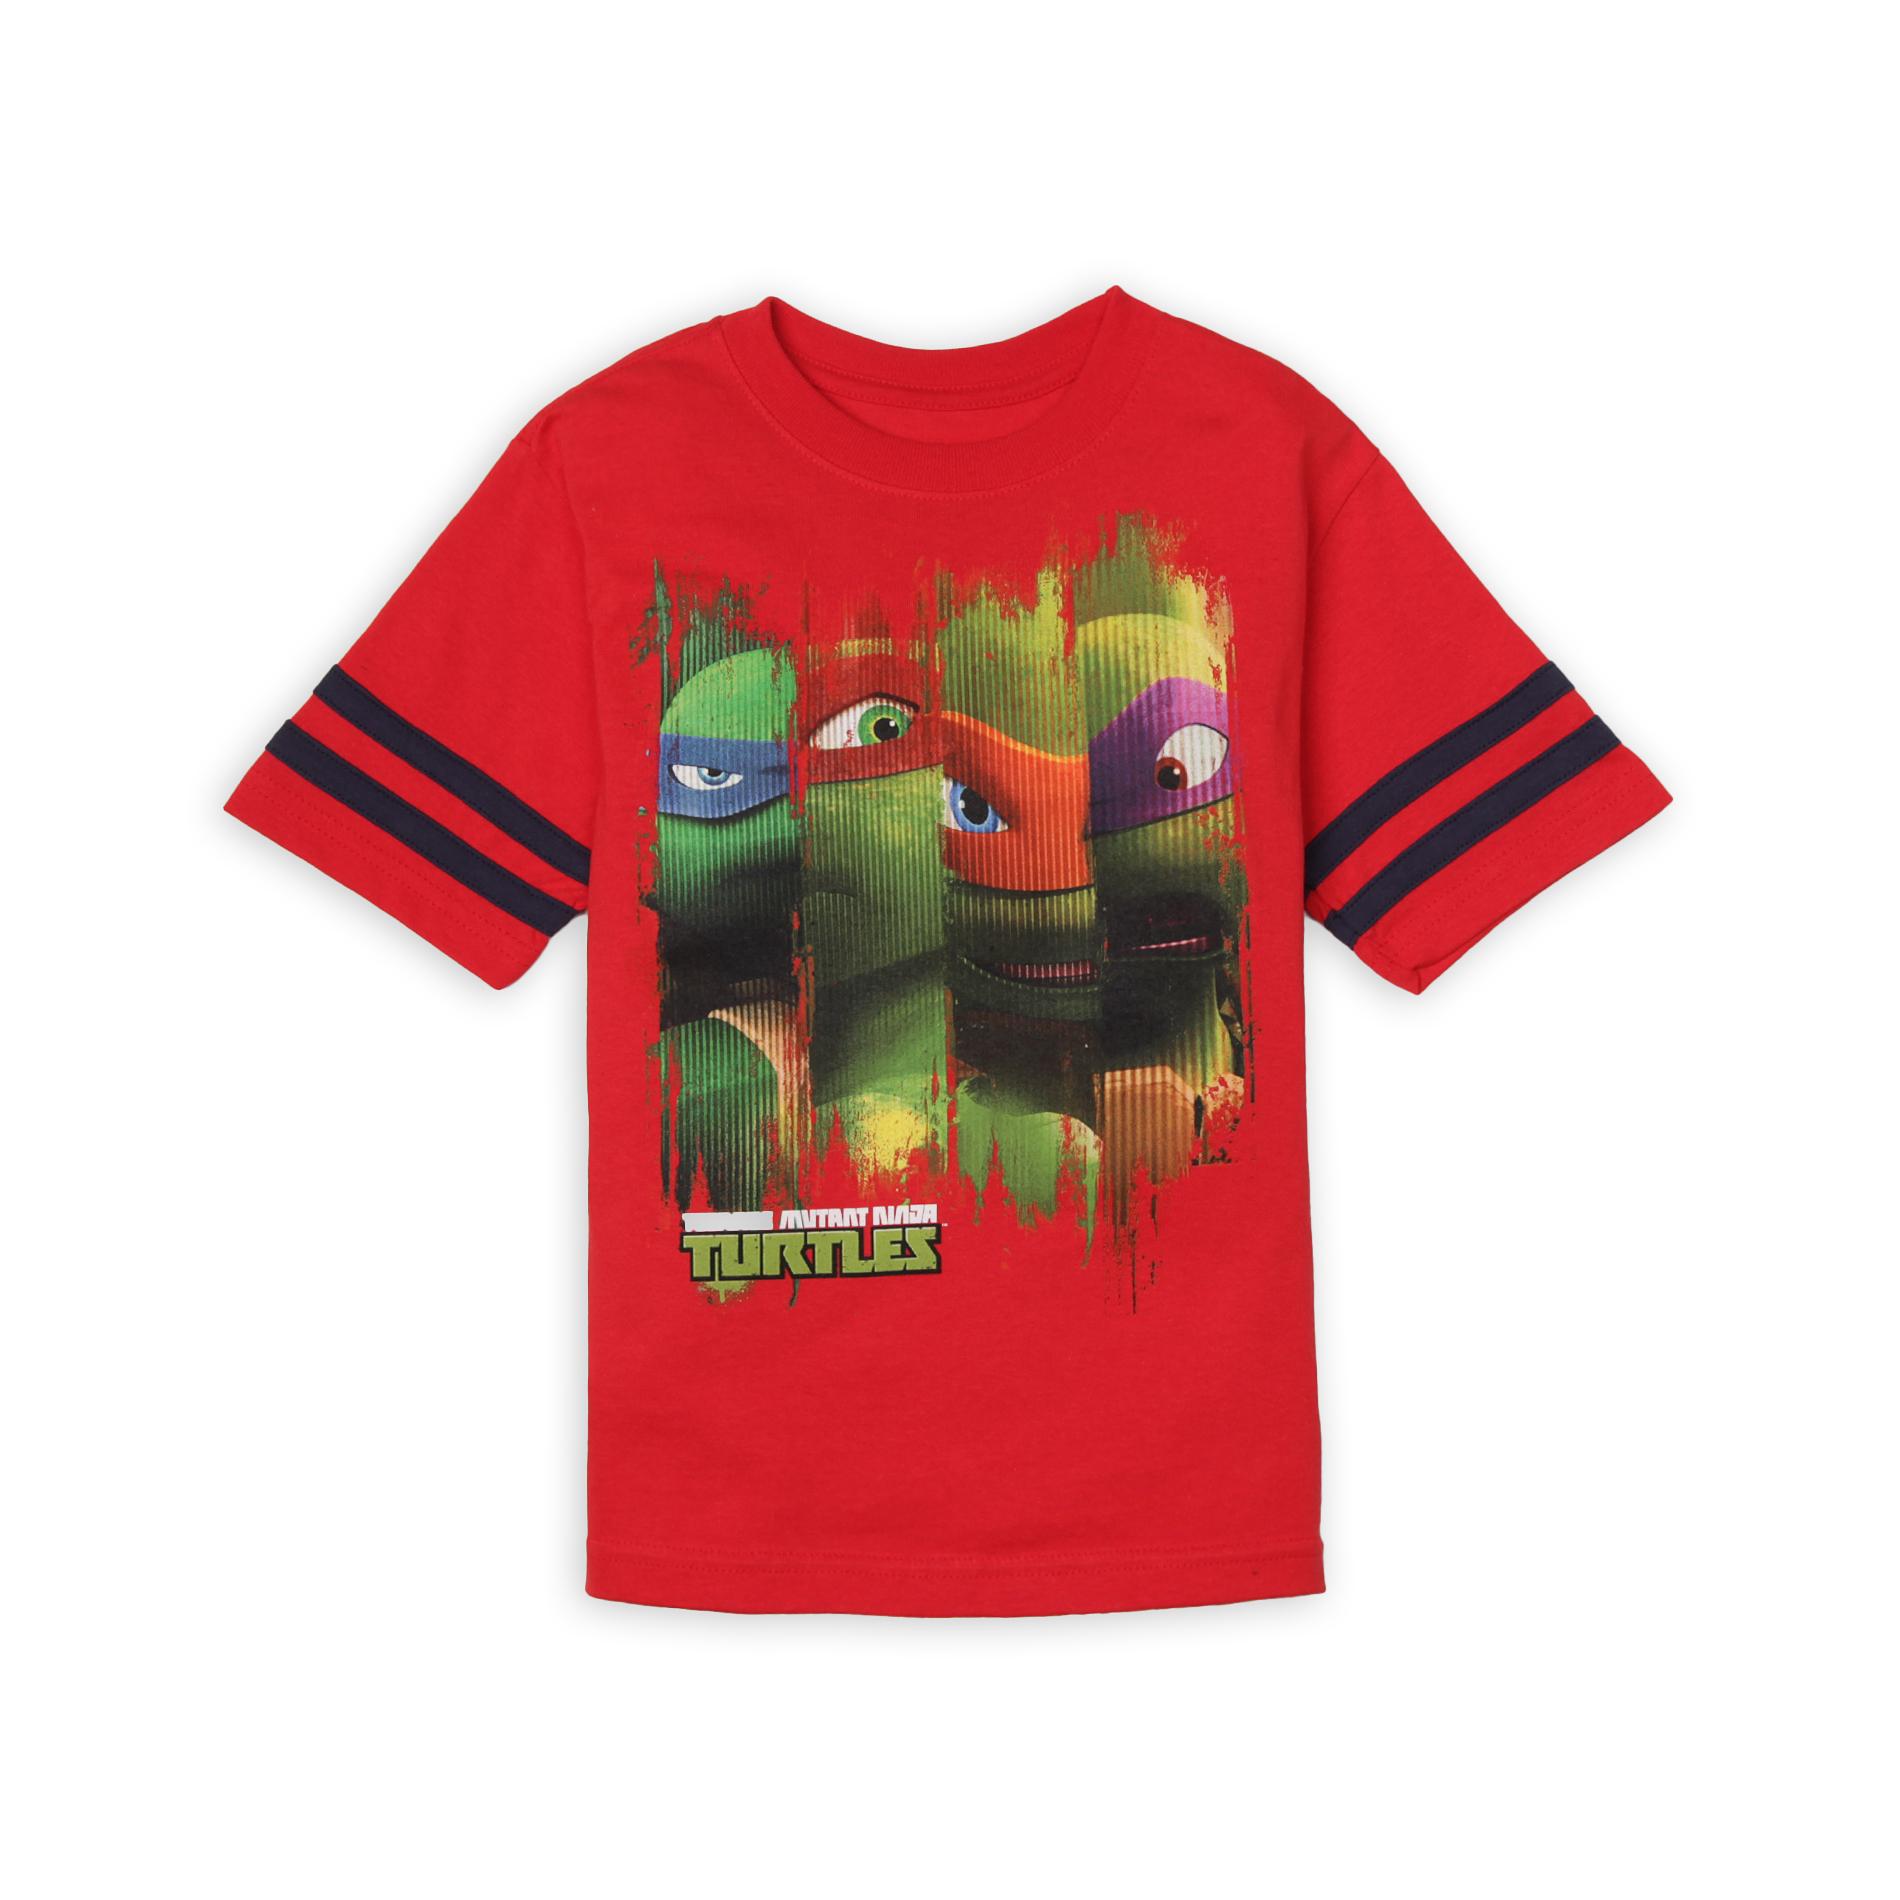 Nickelodeon Teenage Mutant Ninja Turtle Boy's Graphic T-Shirt